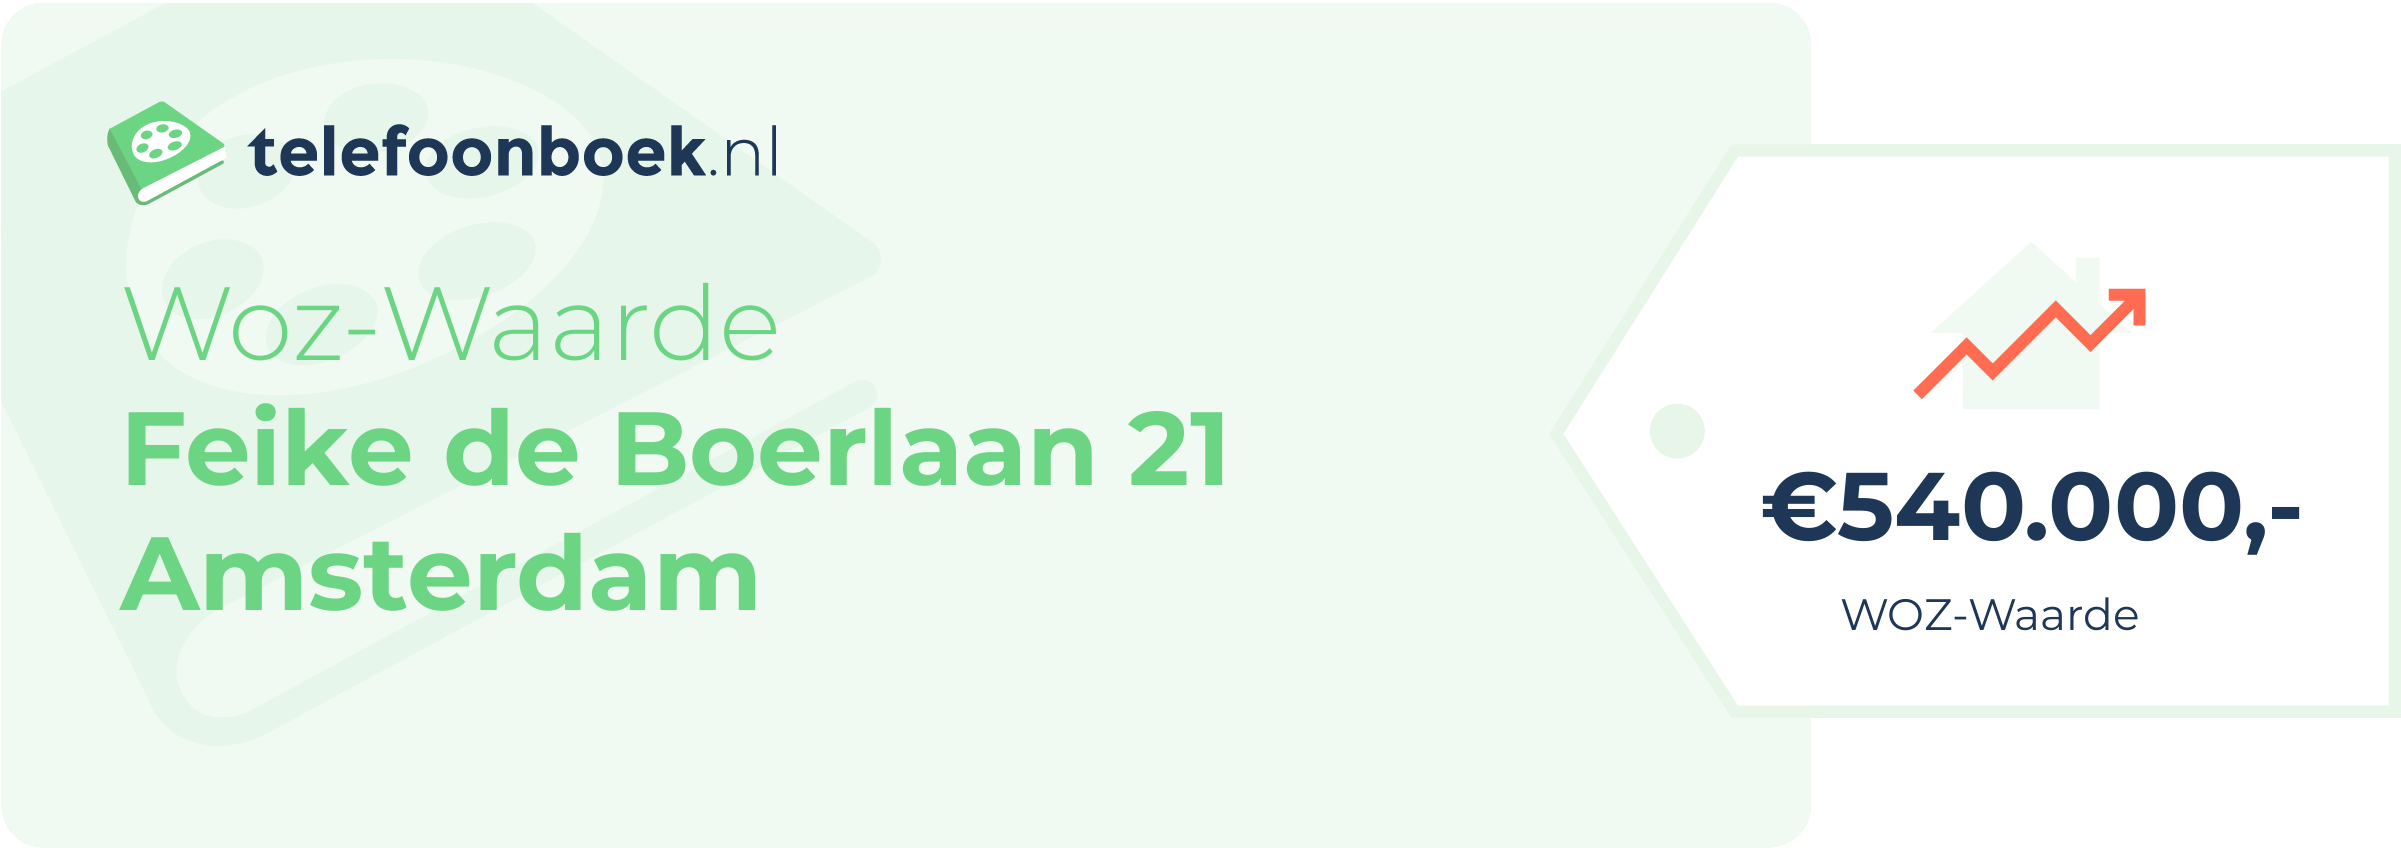 WOZ-waarde Feike De Boerlaan 21 Amsterdam